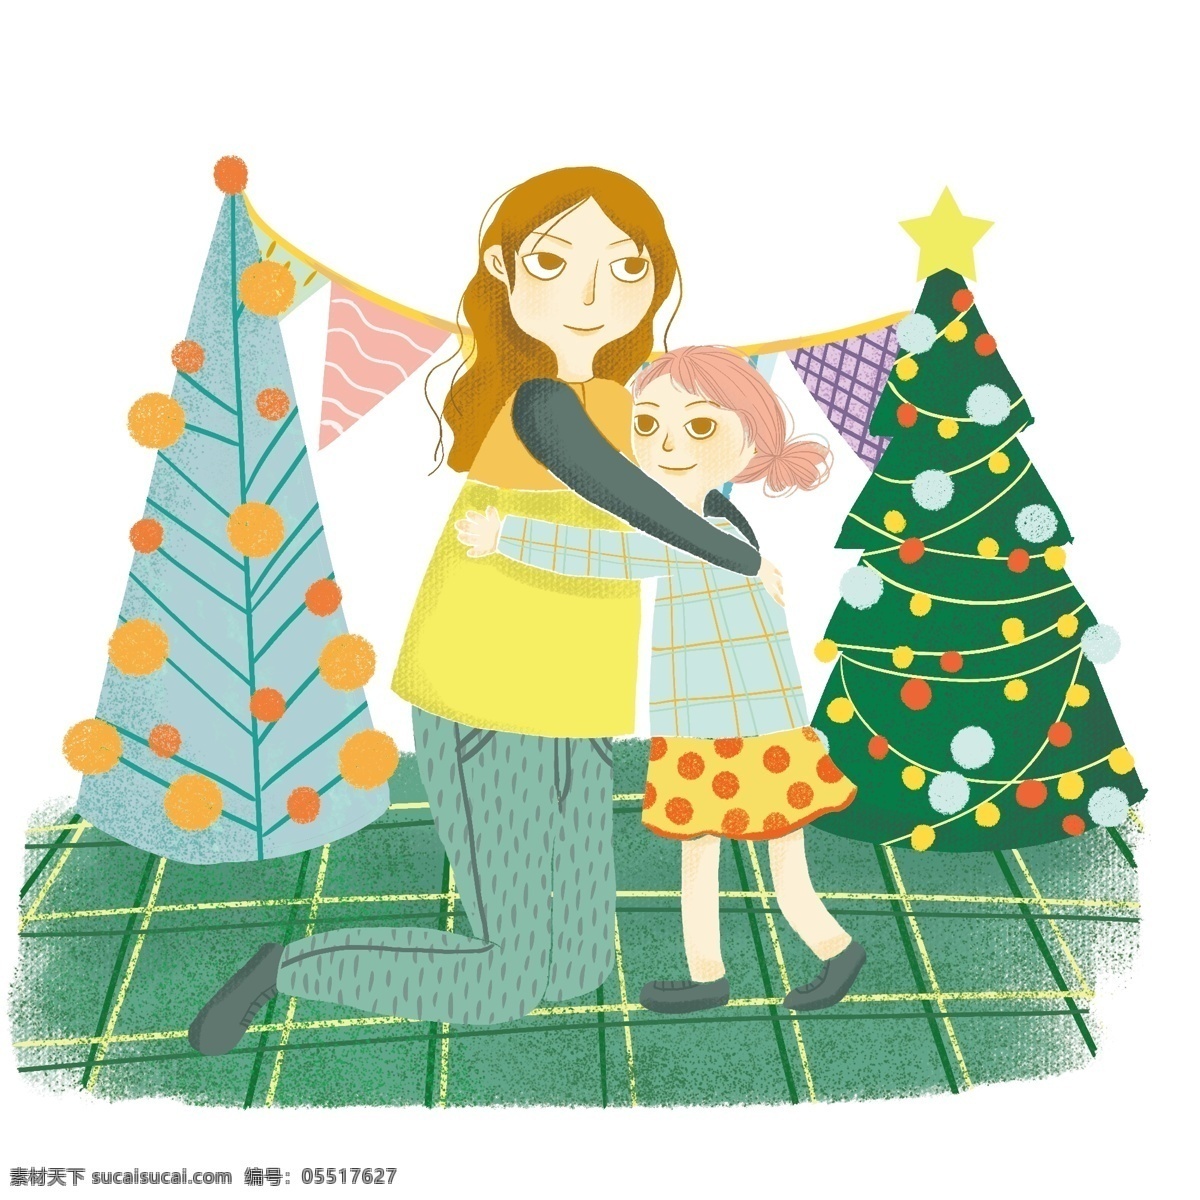 卡通 手绘 收到 礼物 女孩 美丽 圣诞树 创意 海报 创意海报 圣诞节 创意设计 卡通手绘 水彩 彩色 节日 美丽的圣诞树 装饰 开心